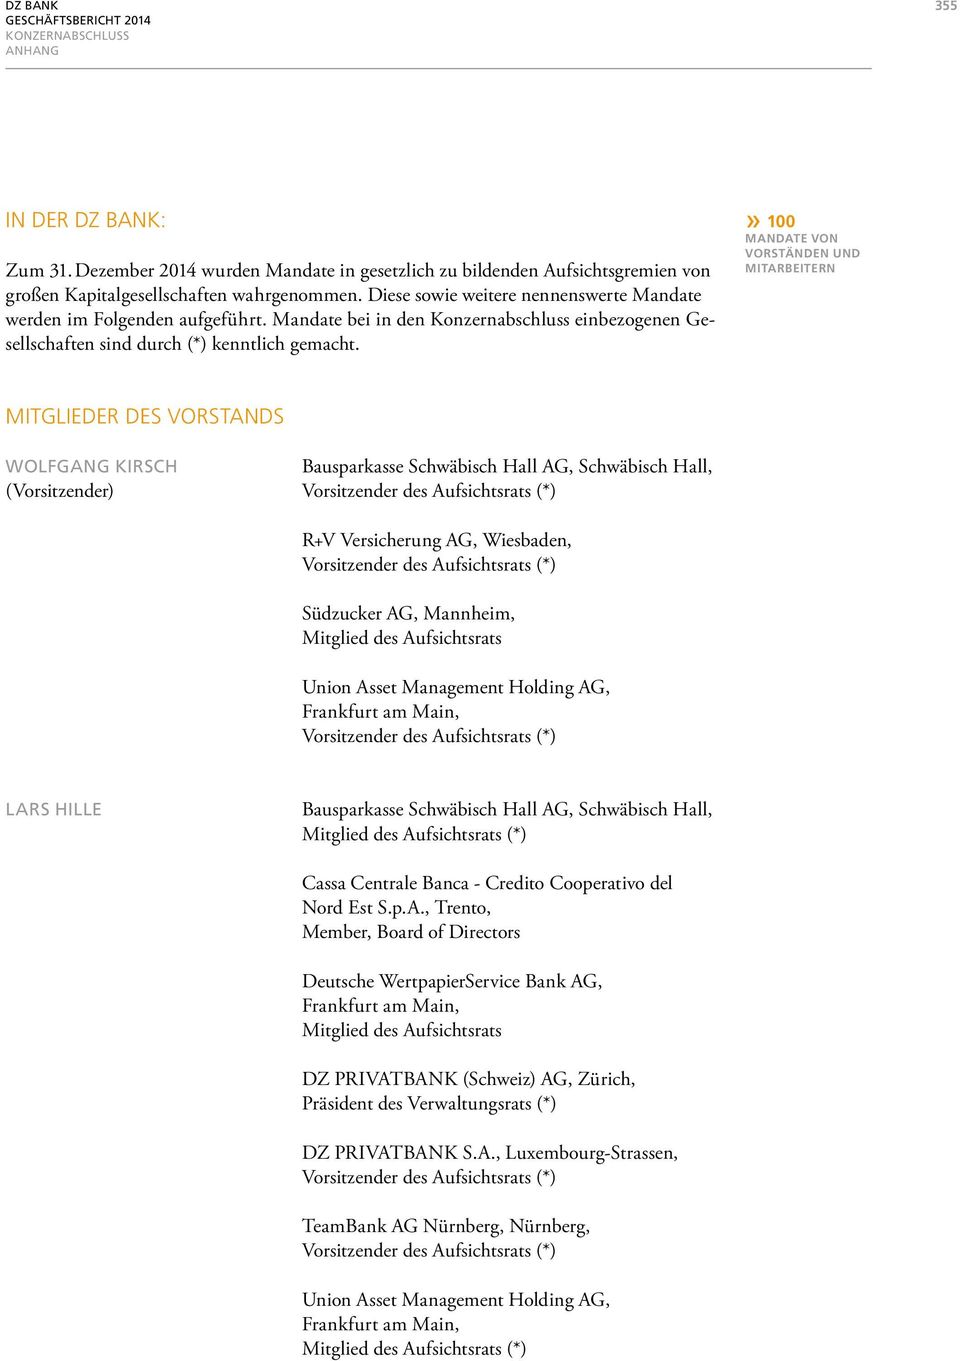 » 100 MANDATE VON VORSTÄNDEN UND MITARBEITERN MITGLIEDER DES VORSTANDS WOLFGANG KIRSCH Bausparkasse Schwäbisch Hall AG, Schwäbisch Hall, (Vorsitzender), Wiesbaden, Südzucker AG, Mannheim,, LARS HILLE